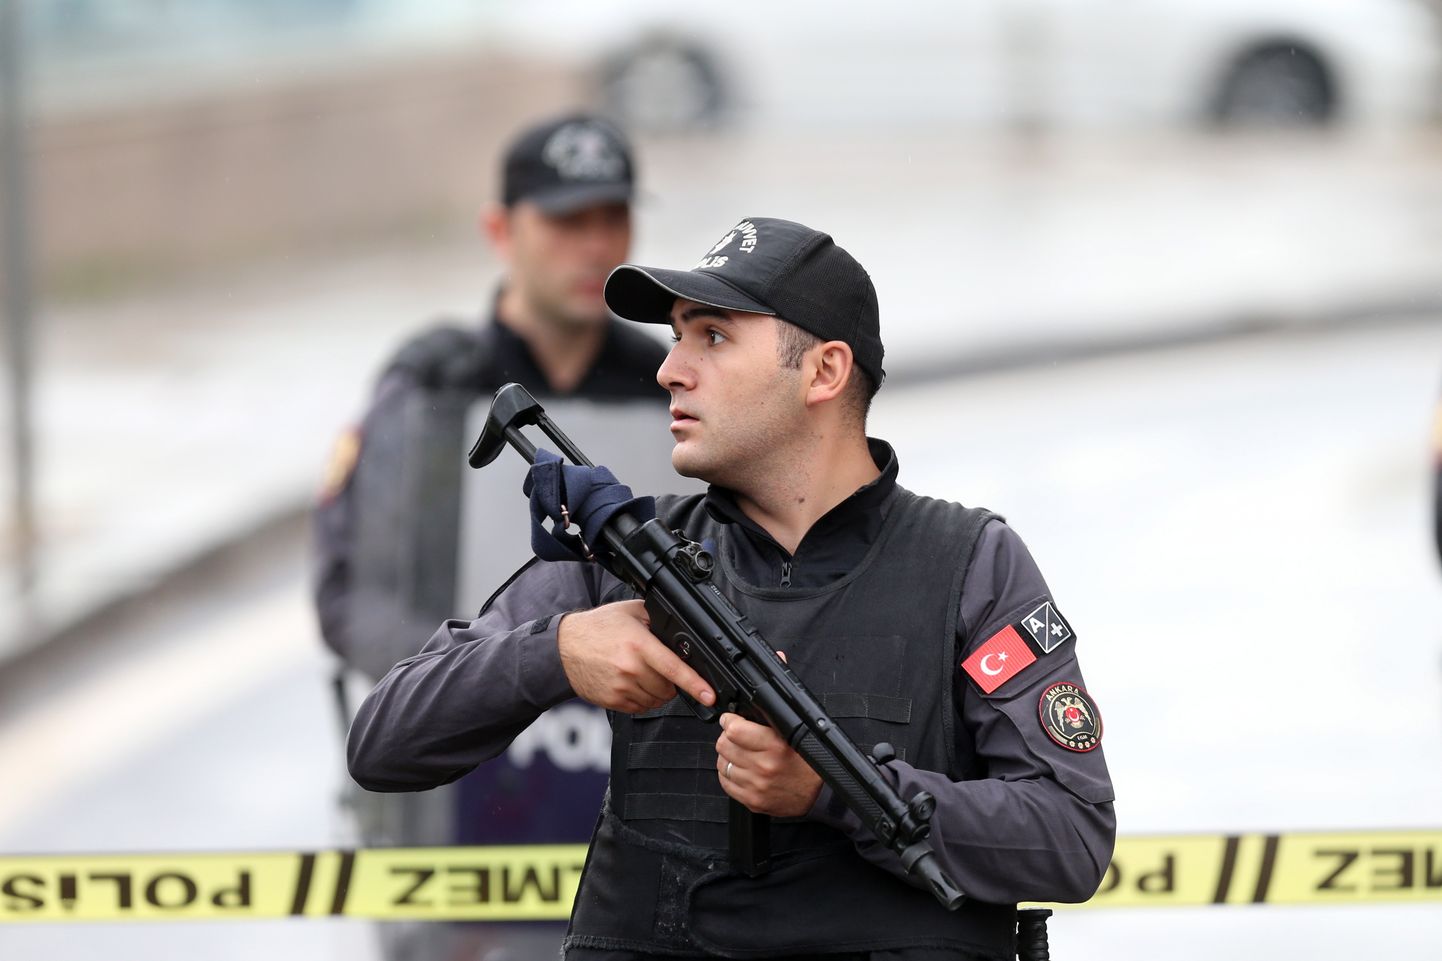 Türgi politseinikud kindlustamas 1. oktoobril siseministeeriumi vastu korraldatud terrorirünnaku toimumispaika.